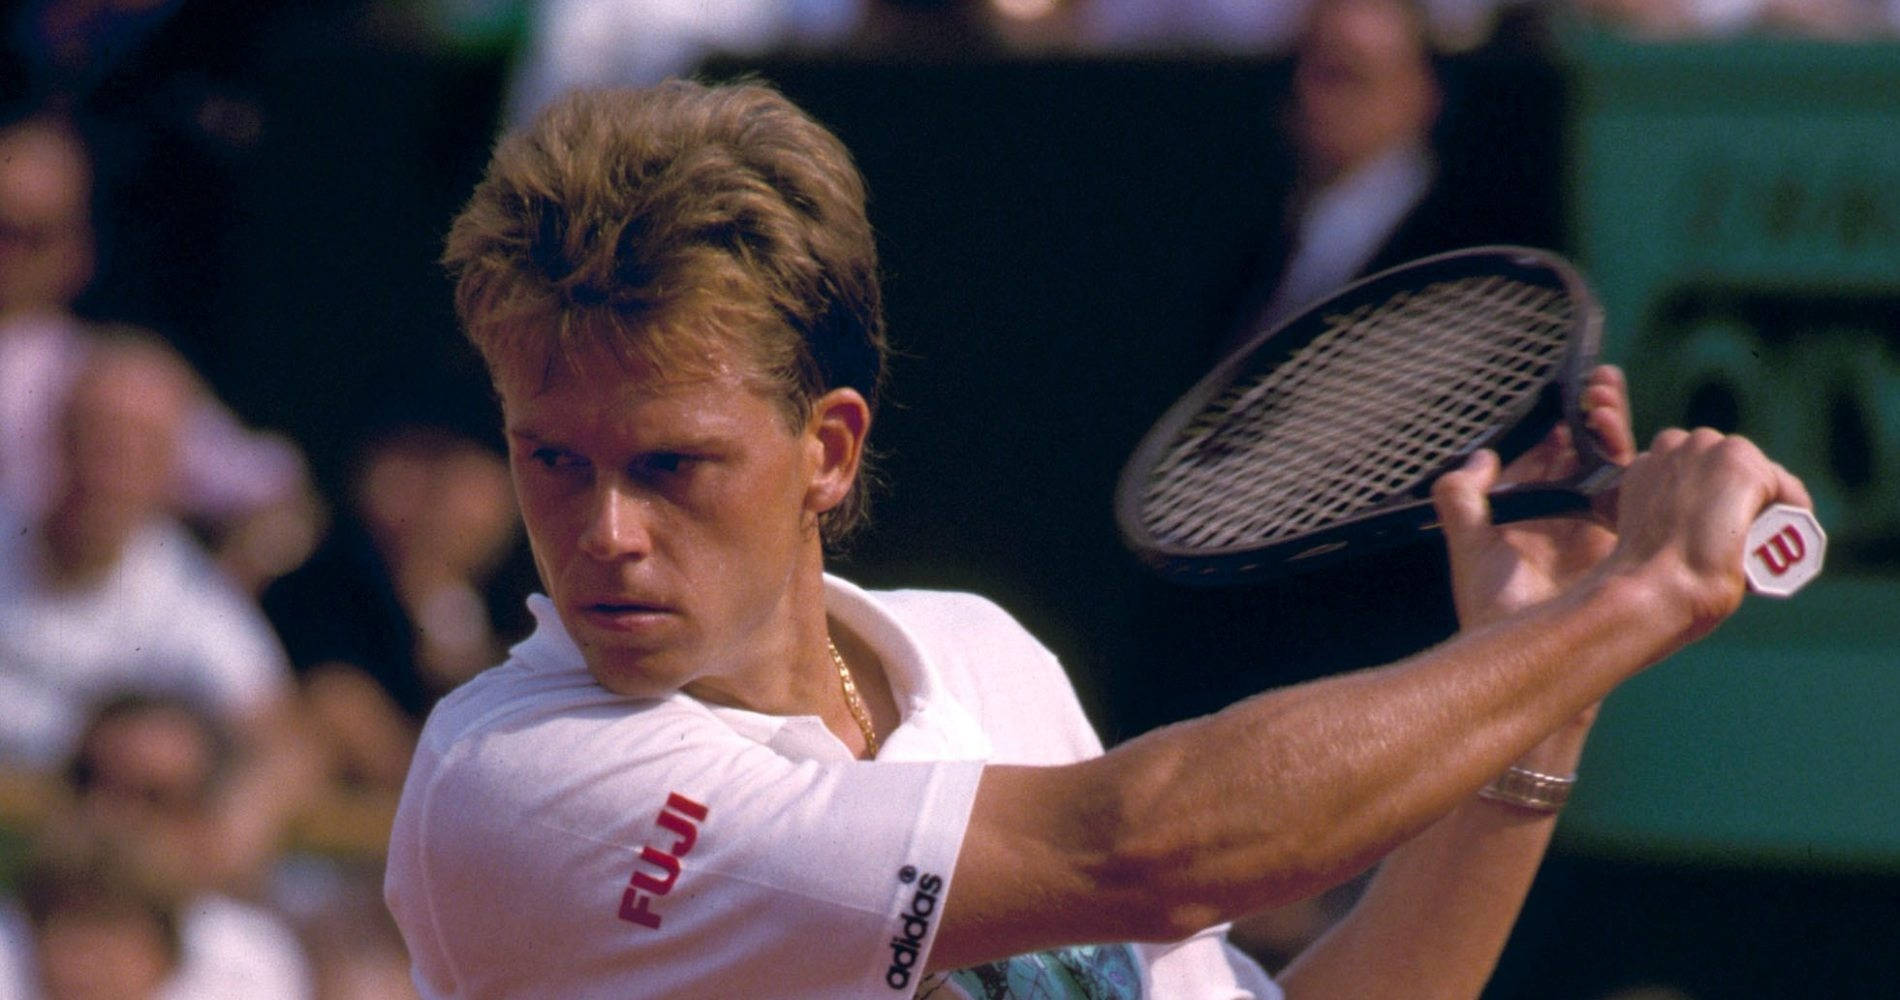 Tennisspiller Stefan Edberg fokuserede på hans kamp. Wallpaper